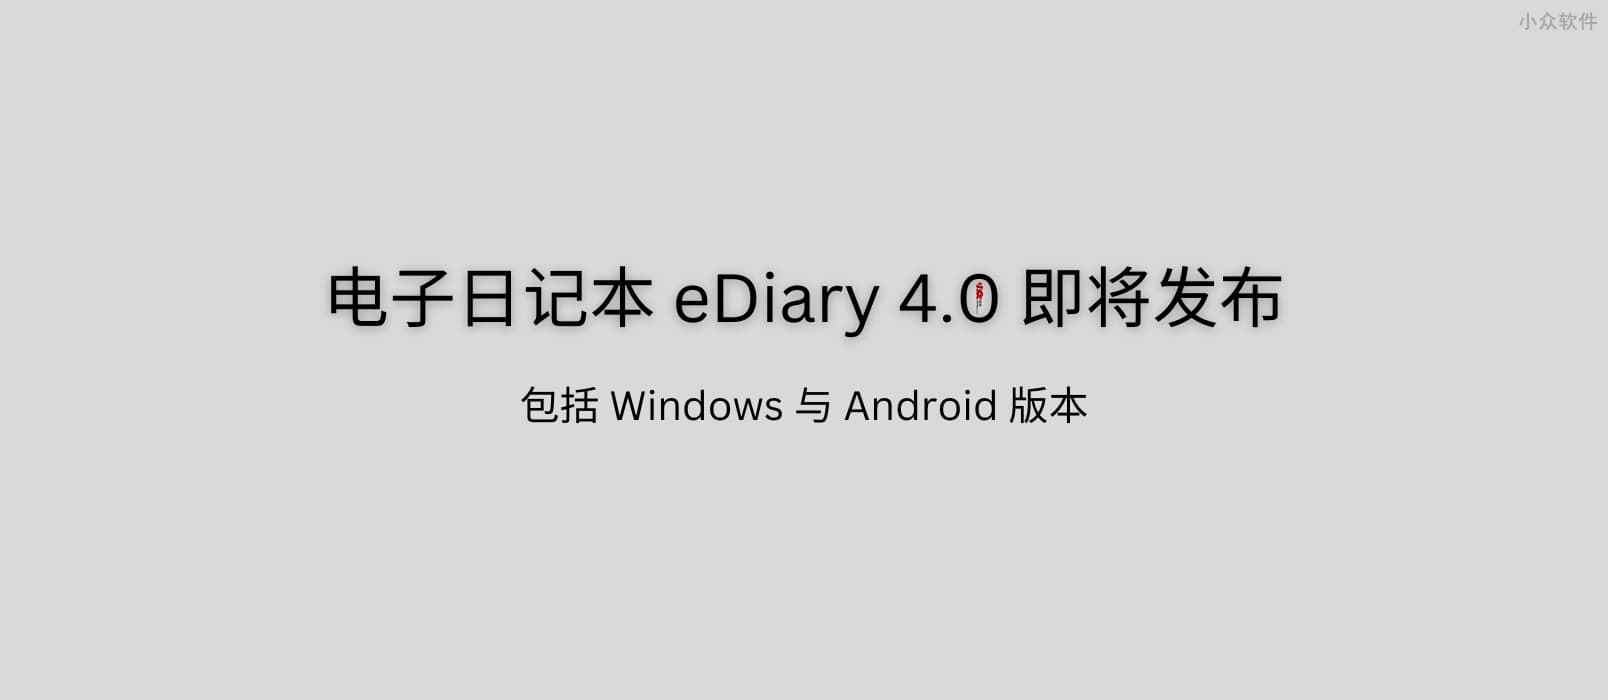 23 岁的电子日记本 eDiary 4.0 即将发布：我的白日梦 13